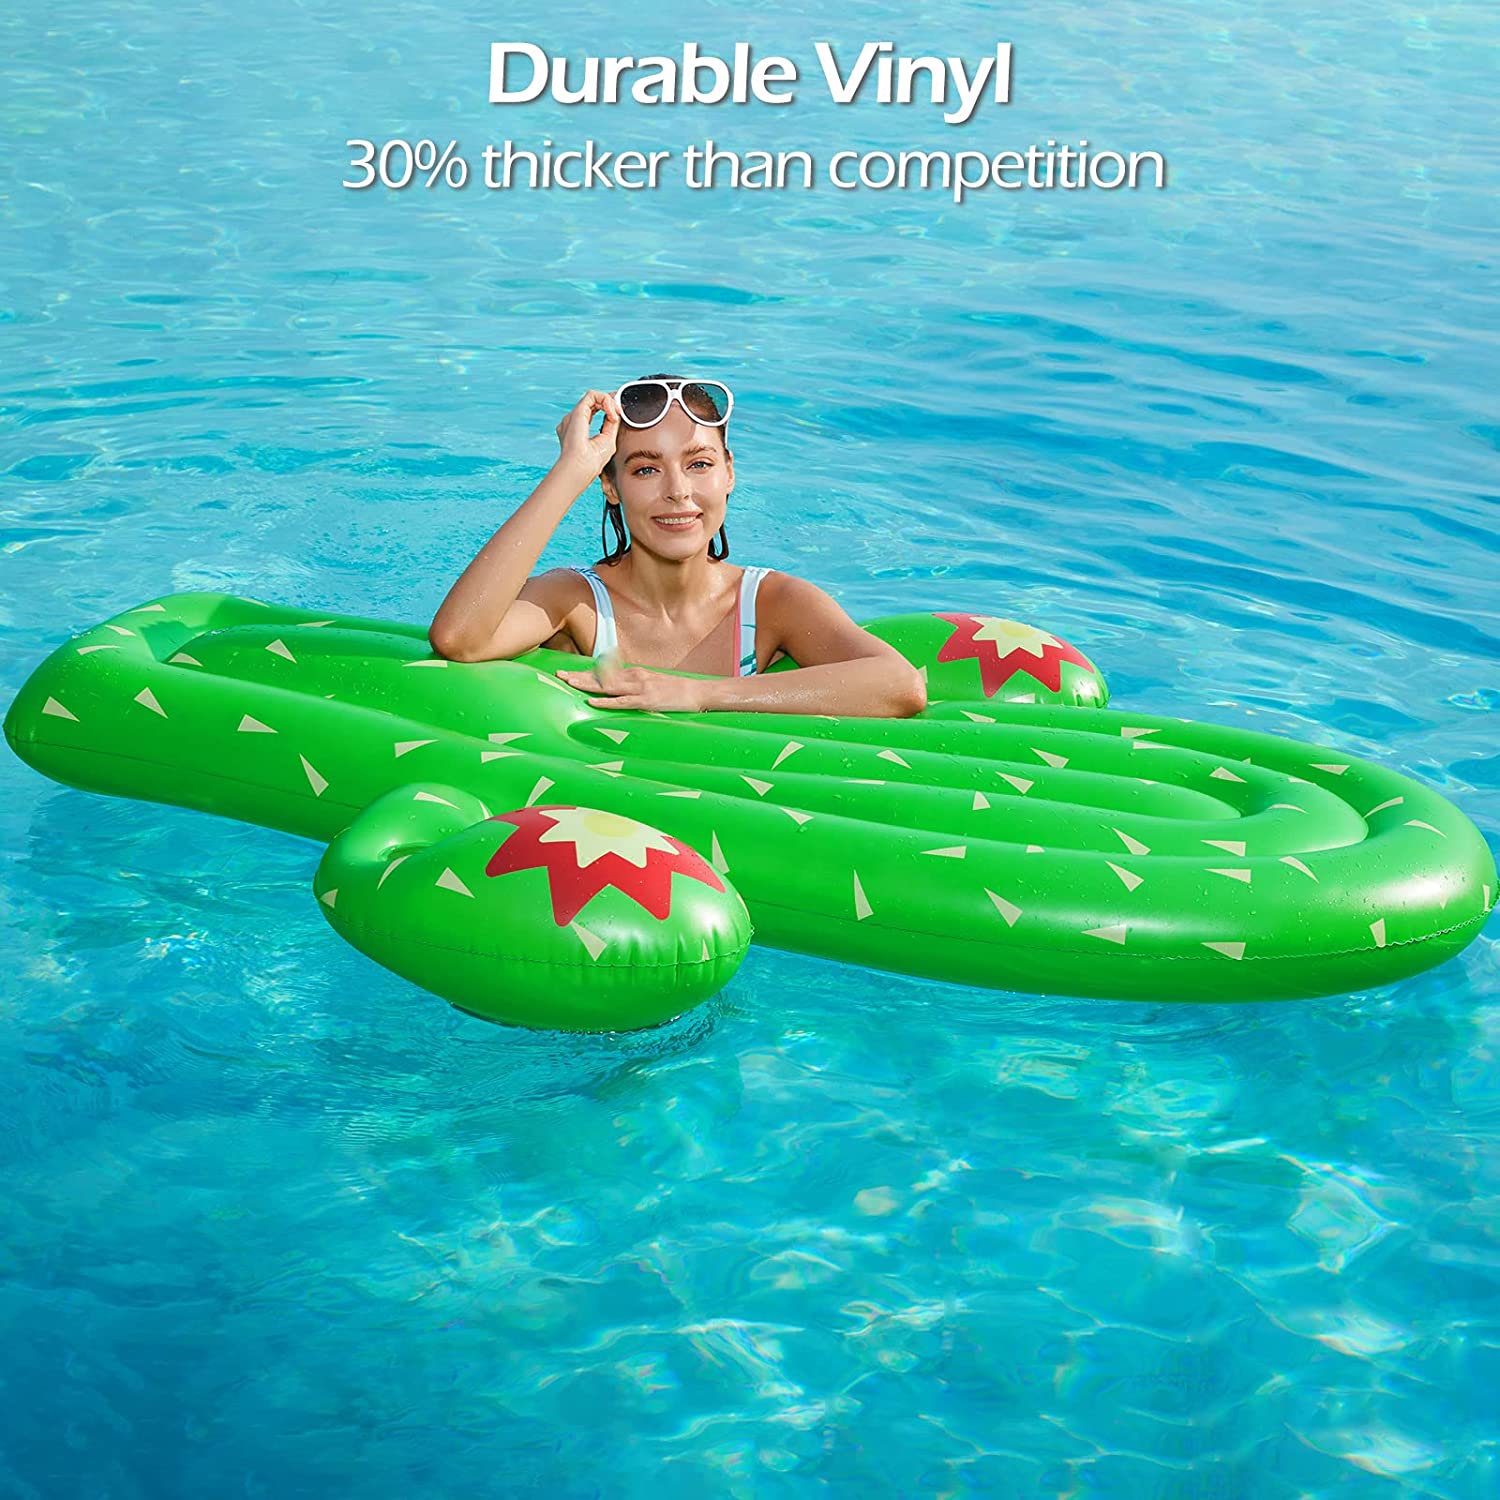 Giant Cactus Lounge Pool Inflatable Floatie - Jasonwell